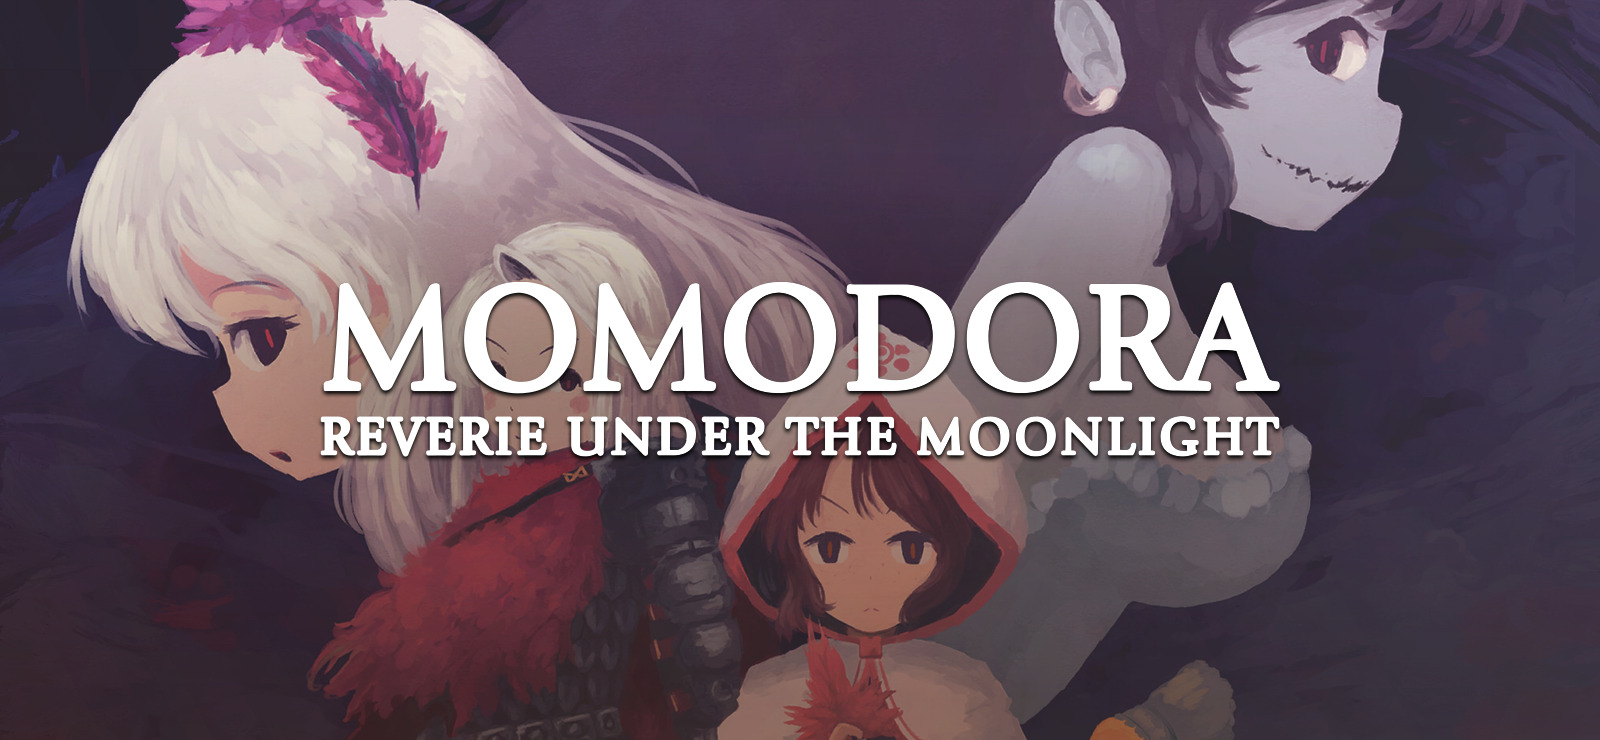 momodora reverie under the moonlight walkthrough